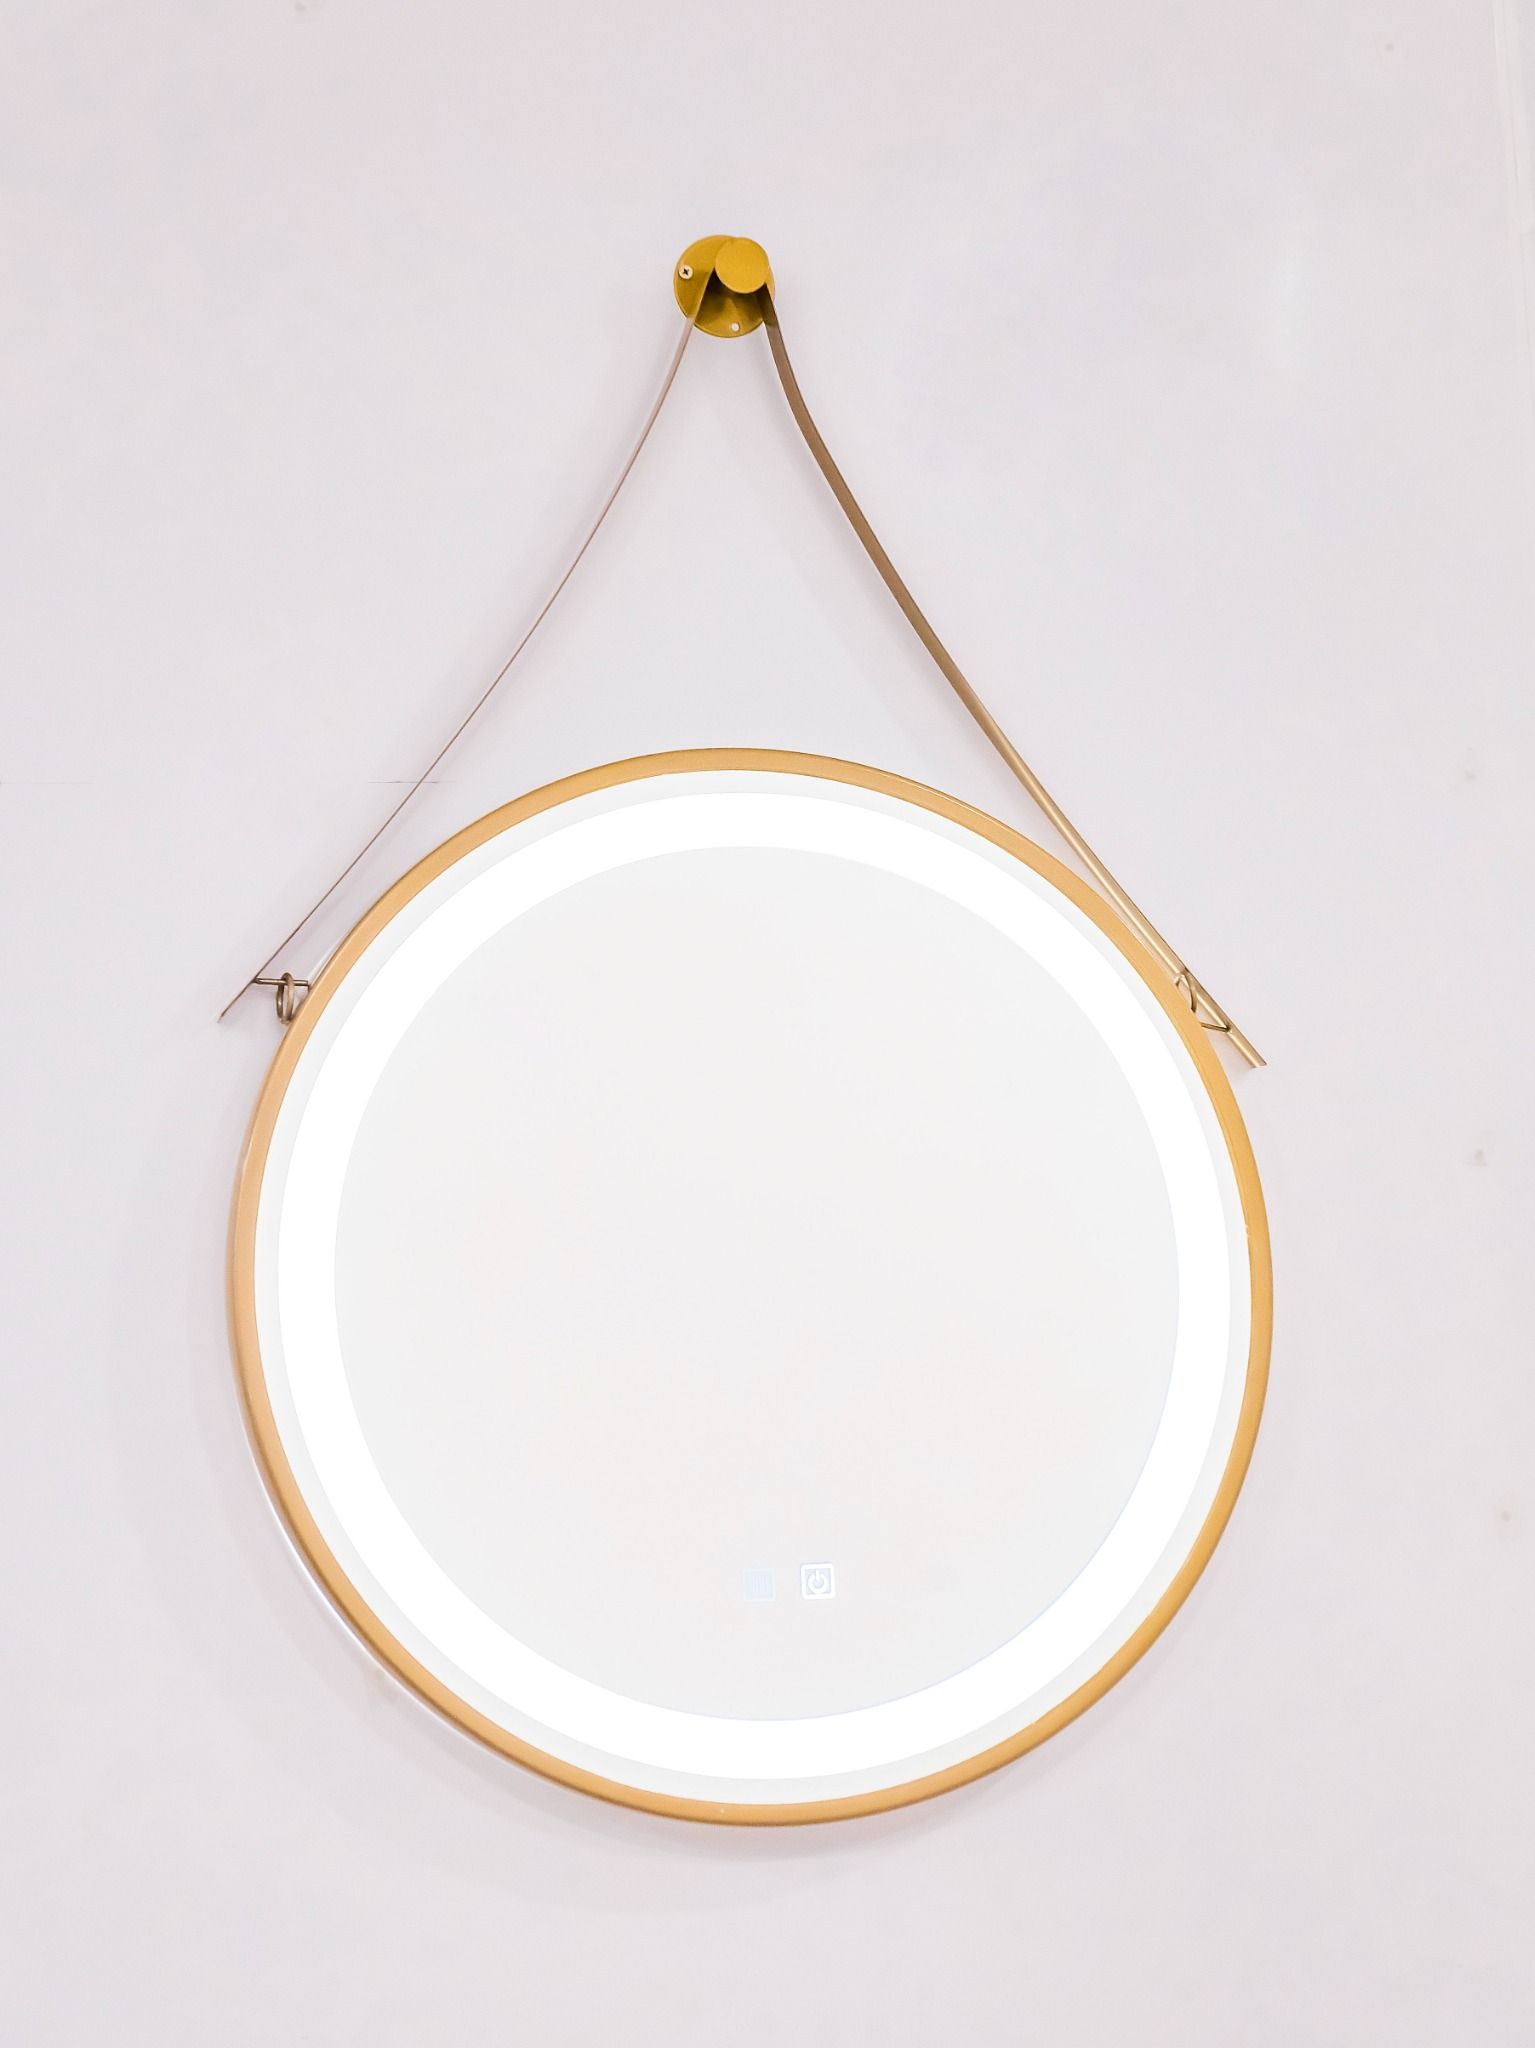  Gương đèn cảm ứng mạ vàng dây treo cao cấp Hoàng Thiện GD 3338-8 